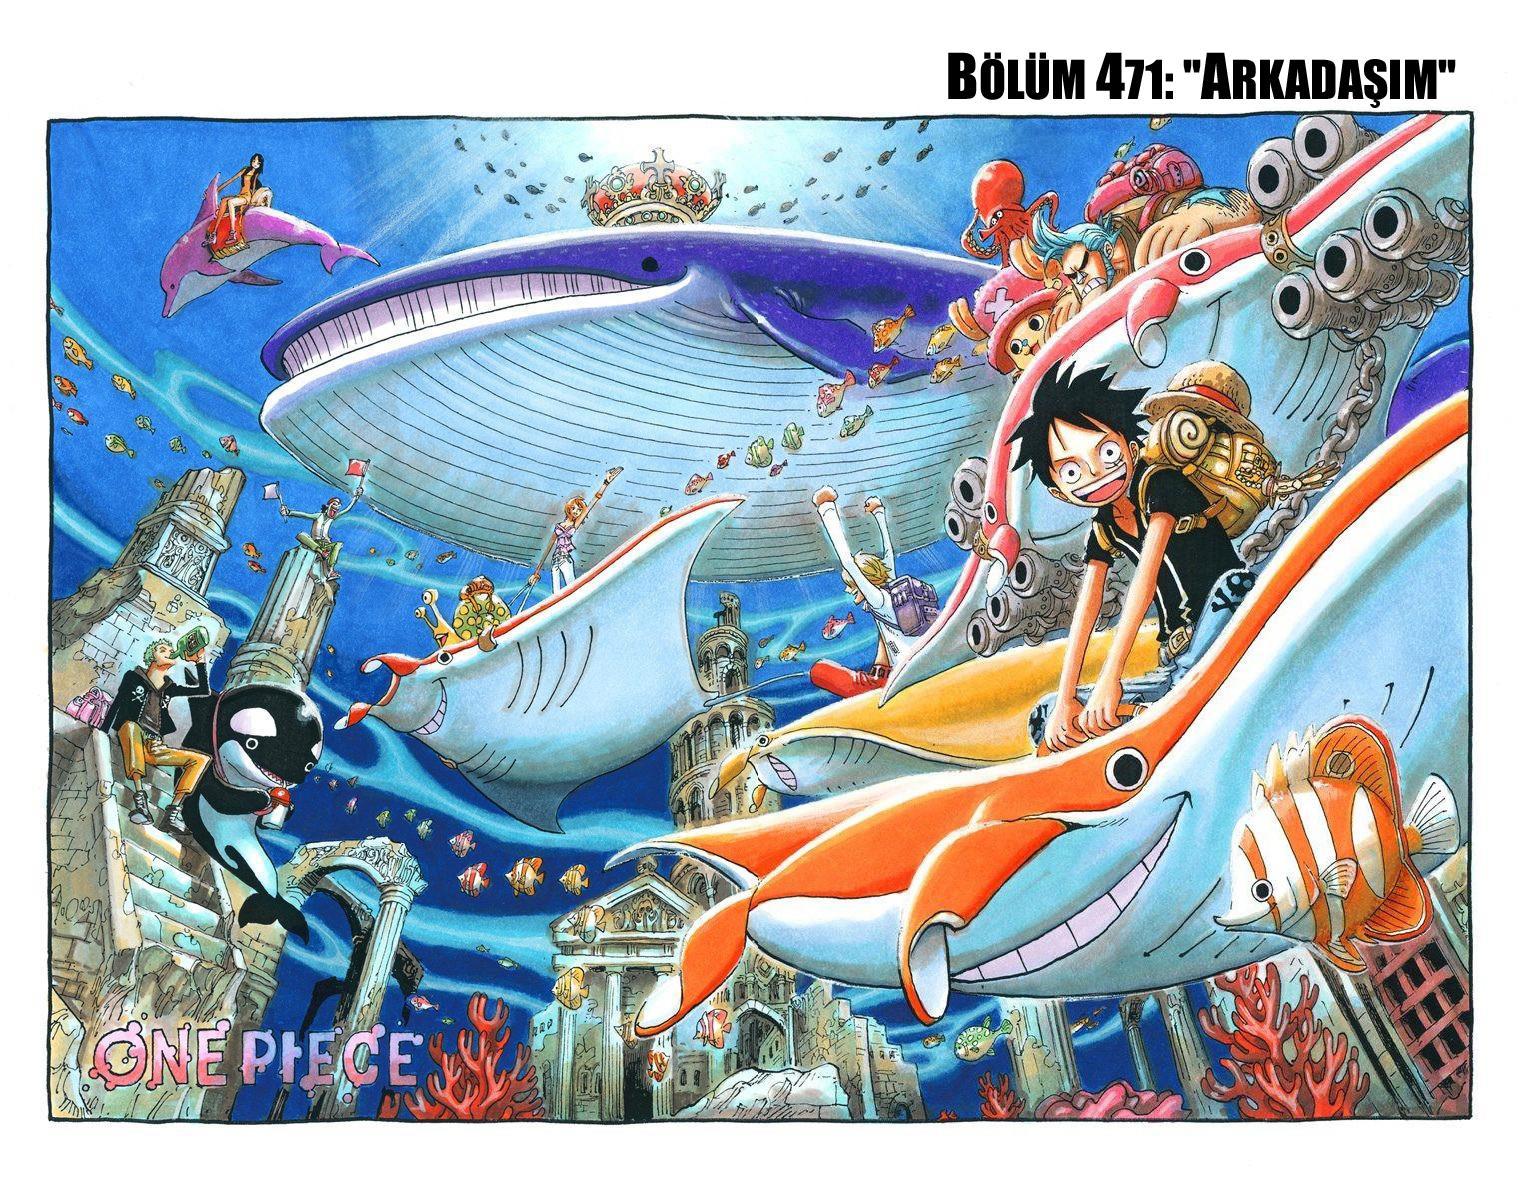 One Piece [Renkli] mangasının 0471 bölümünün 2. sayfasını okuyorsunuz.